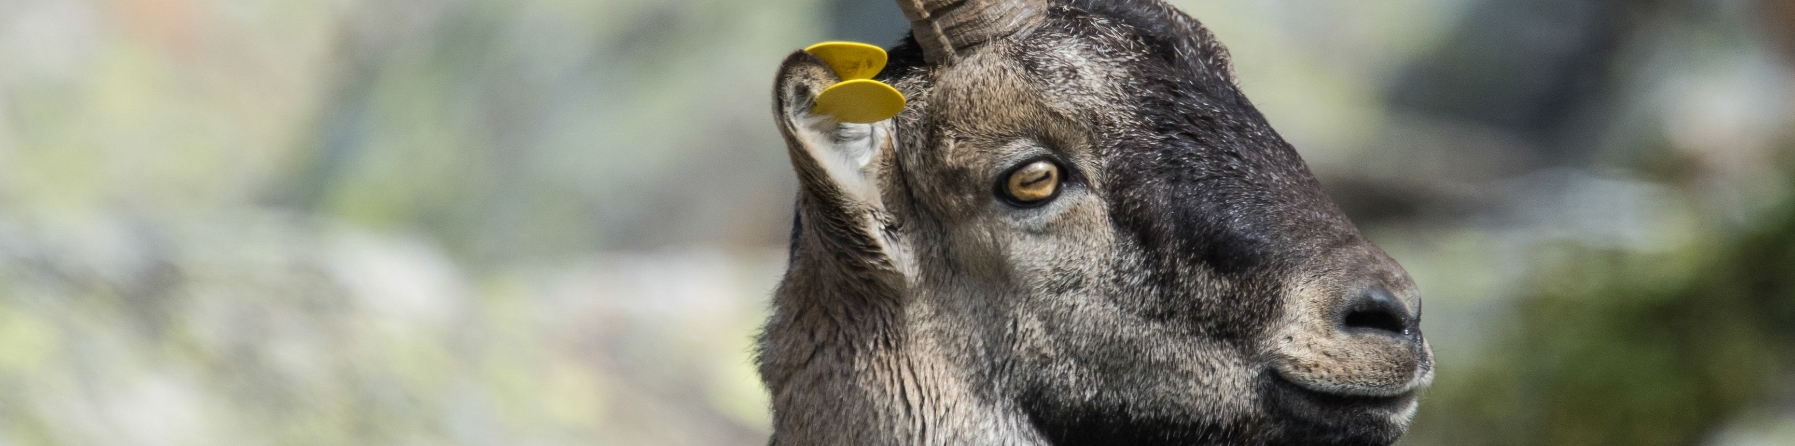 Cabras monteses : ¿ Cómo observarlas sin molestarlas ?